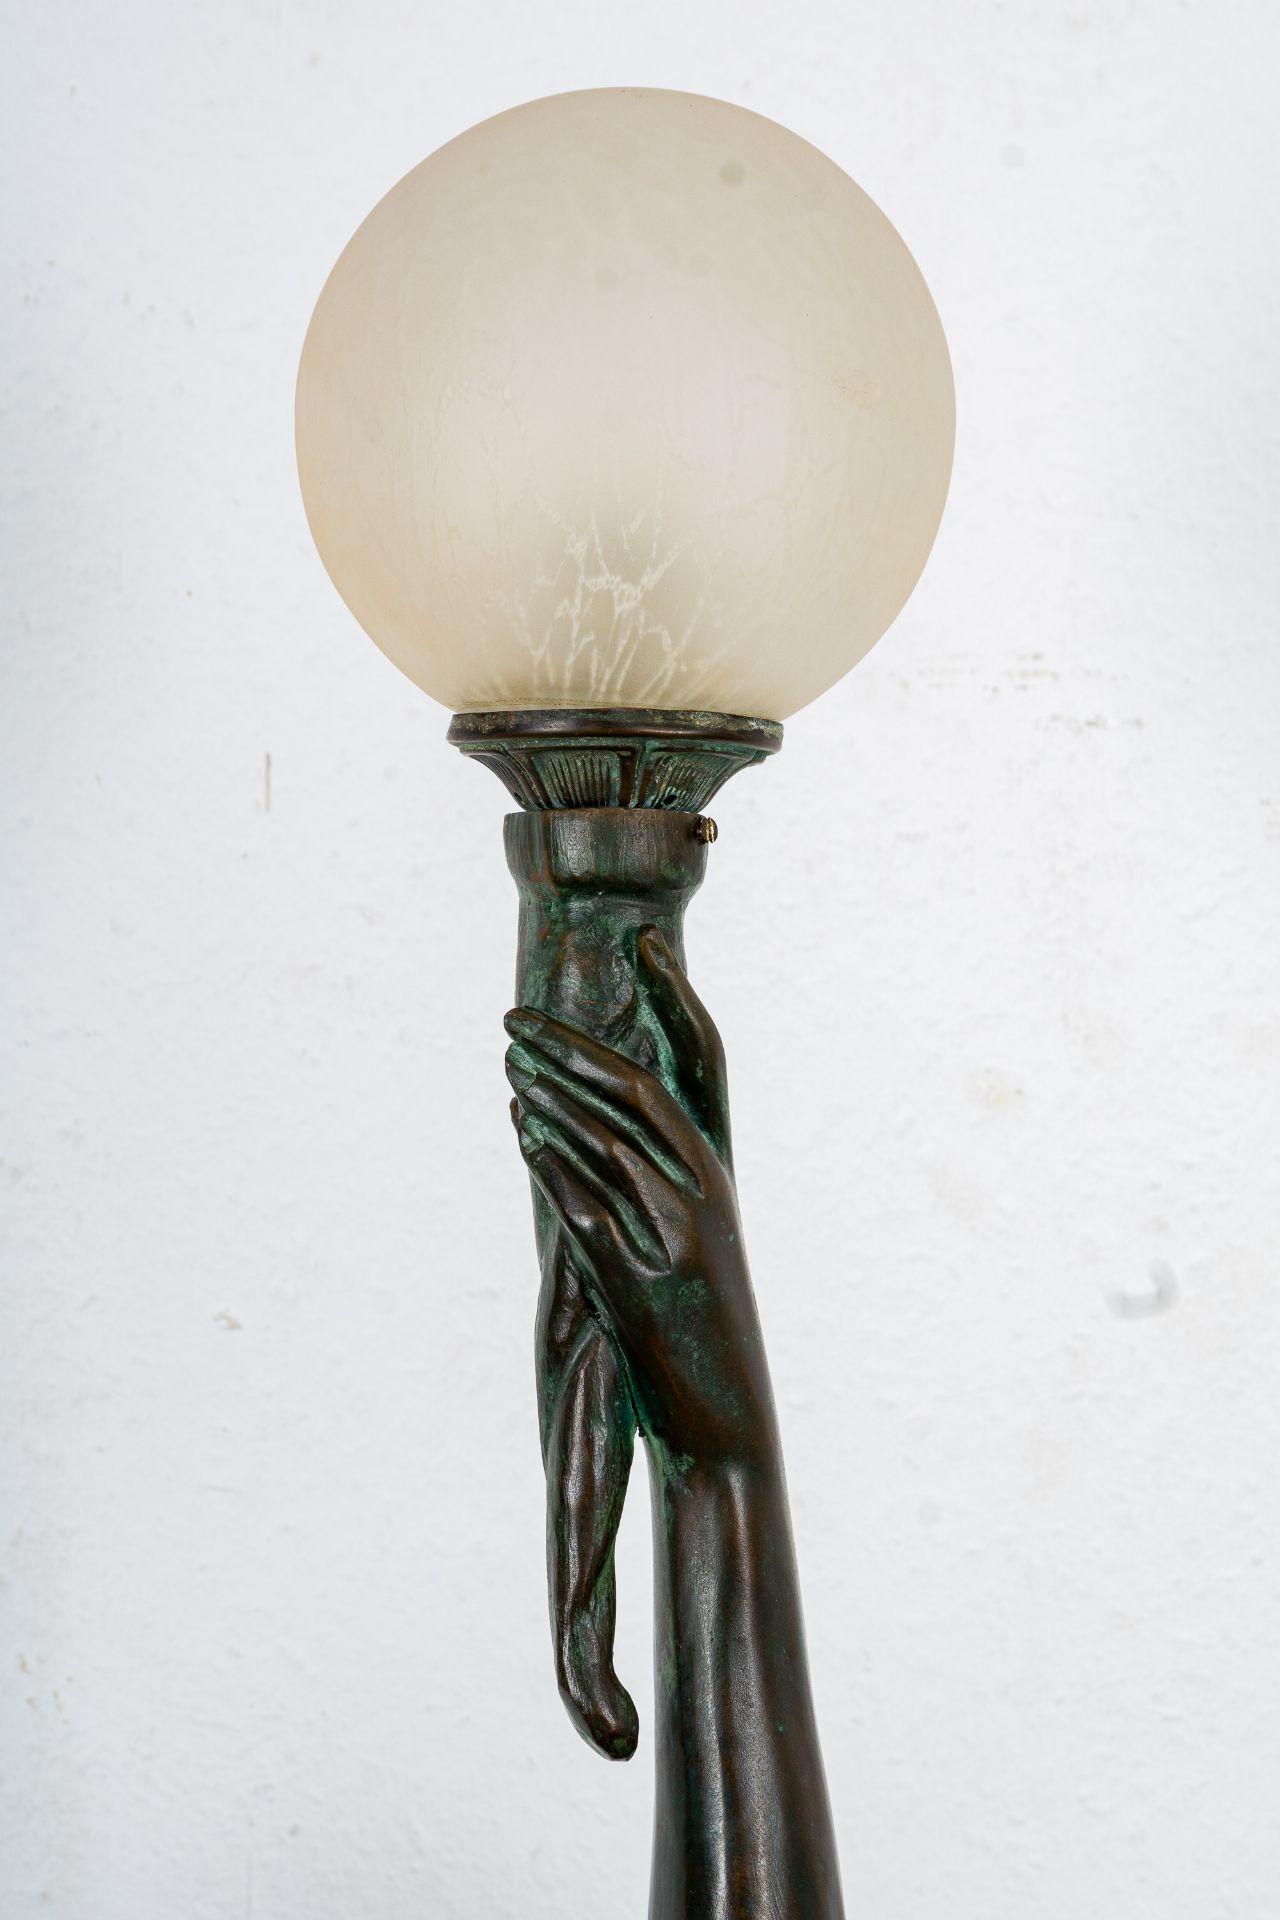 Große einflammige Figurenlampe, Bronze-Hohlguss mit grünlich-brauner Patina, ihre linke Hand emporg - Image 5 of 20